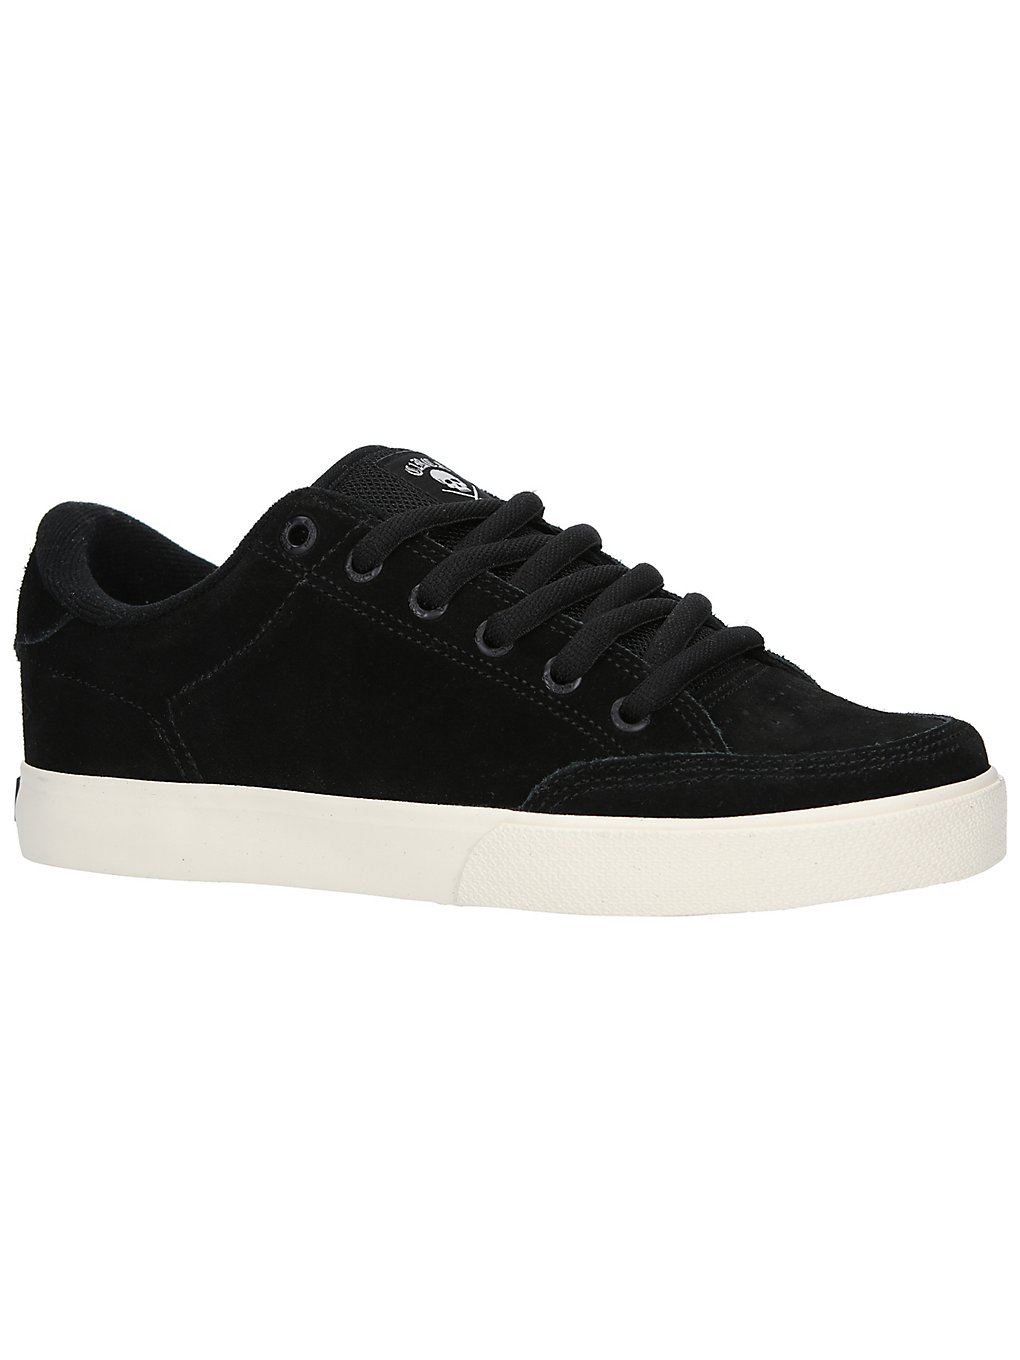 Circa AL 50 Pro Skate Shoes noir